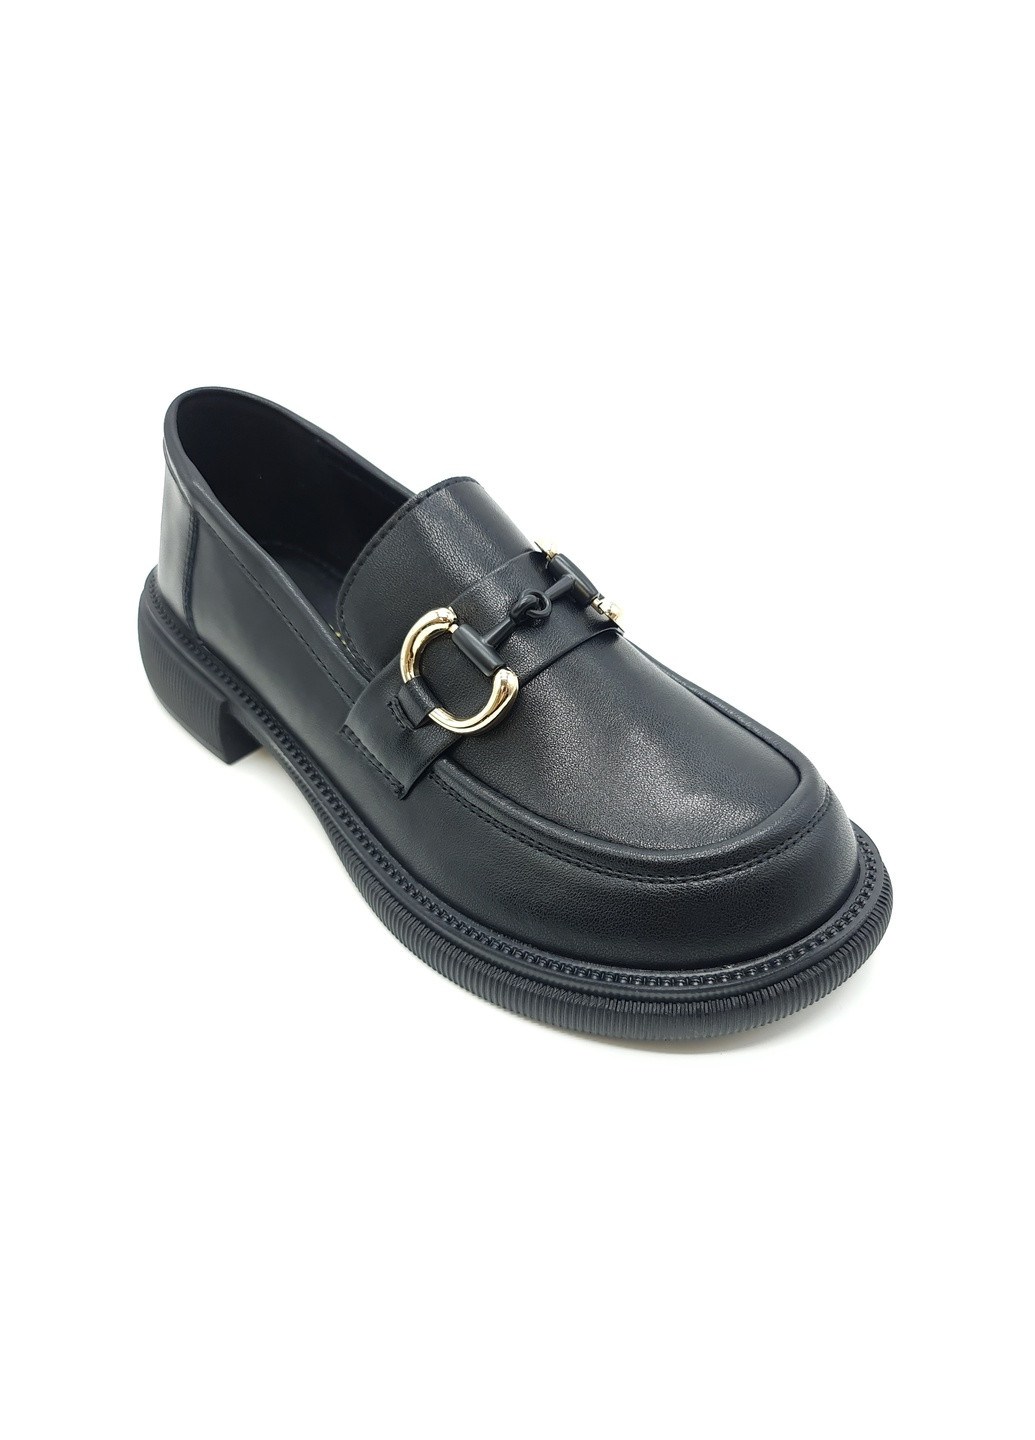 Жіночі туфлі чорні шкіряні YA-17-3 23 см (р) Yalasou (259299691)